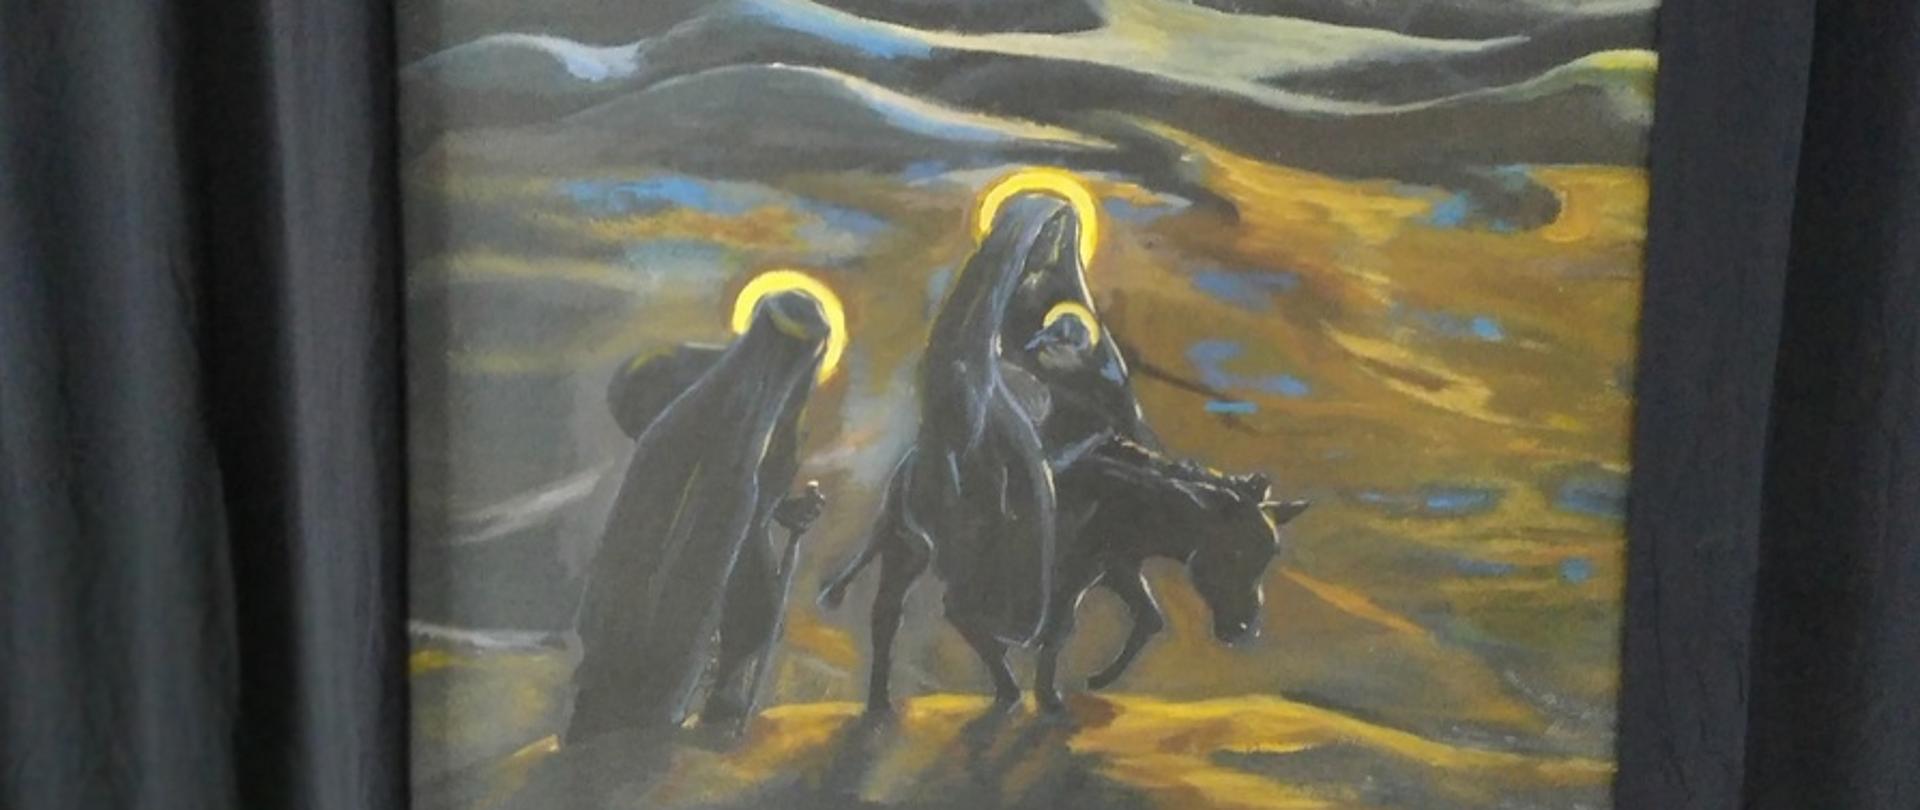 obraz w kolorach szaro, niebieskich, żółto pomarańczowych przedstawiających idącego św. Józefa i Maryję z dzieciątkiem na osiołku. w górnej części widoczne piramidy